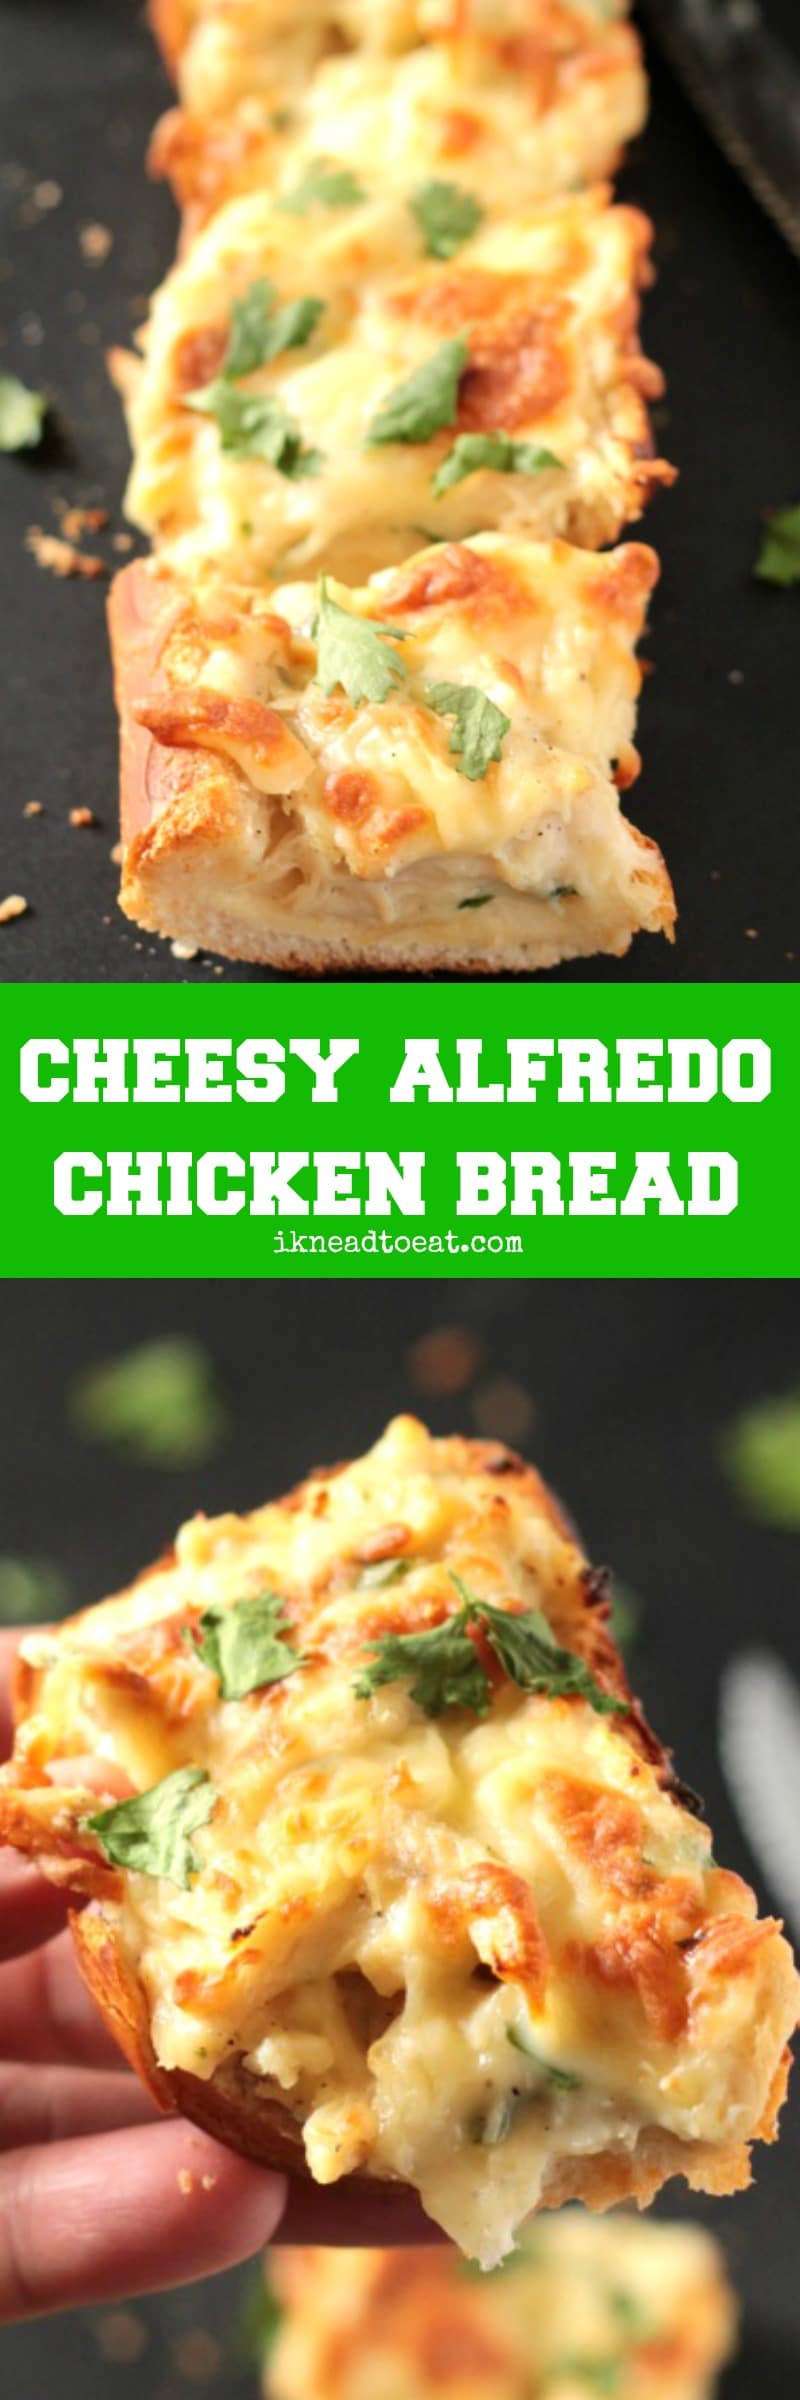 Cheesy Alfredo Chicken Bread